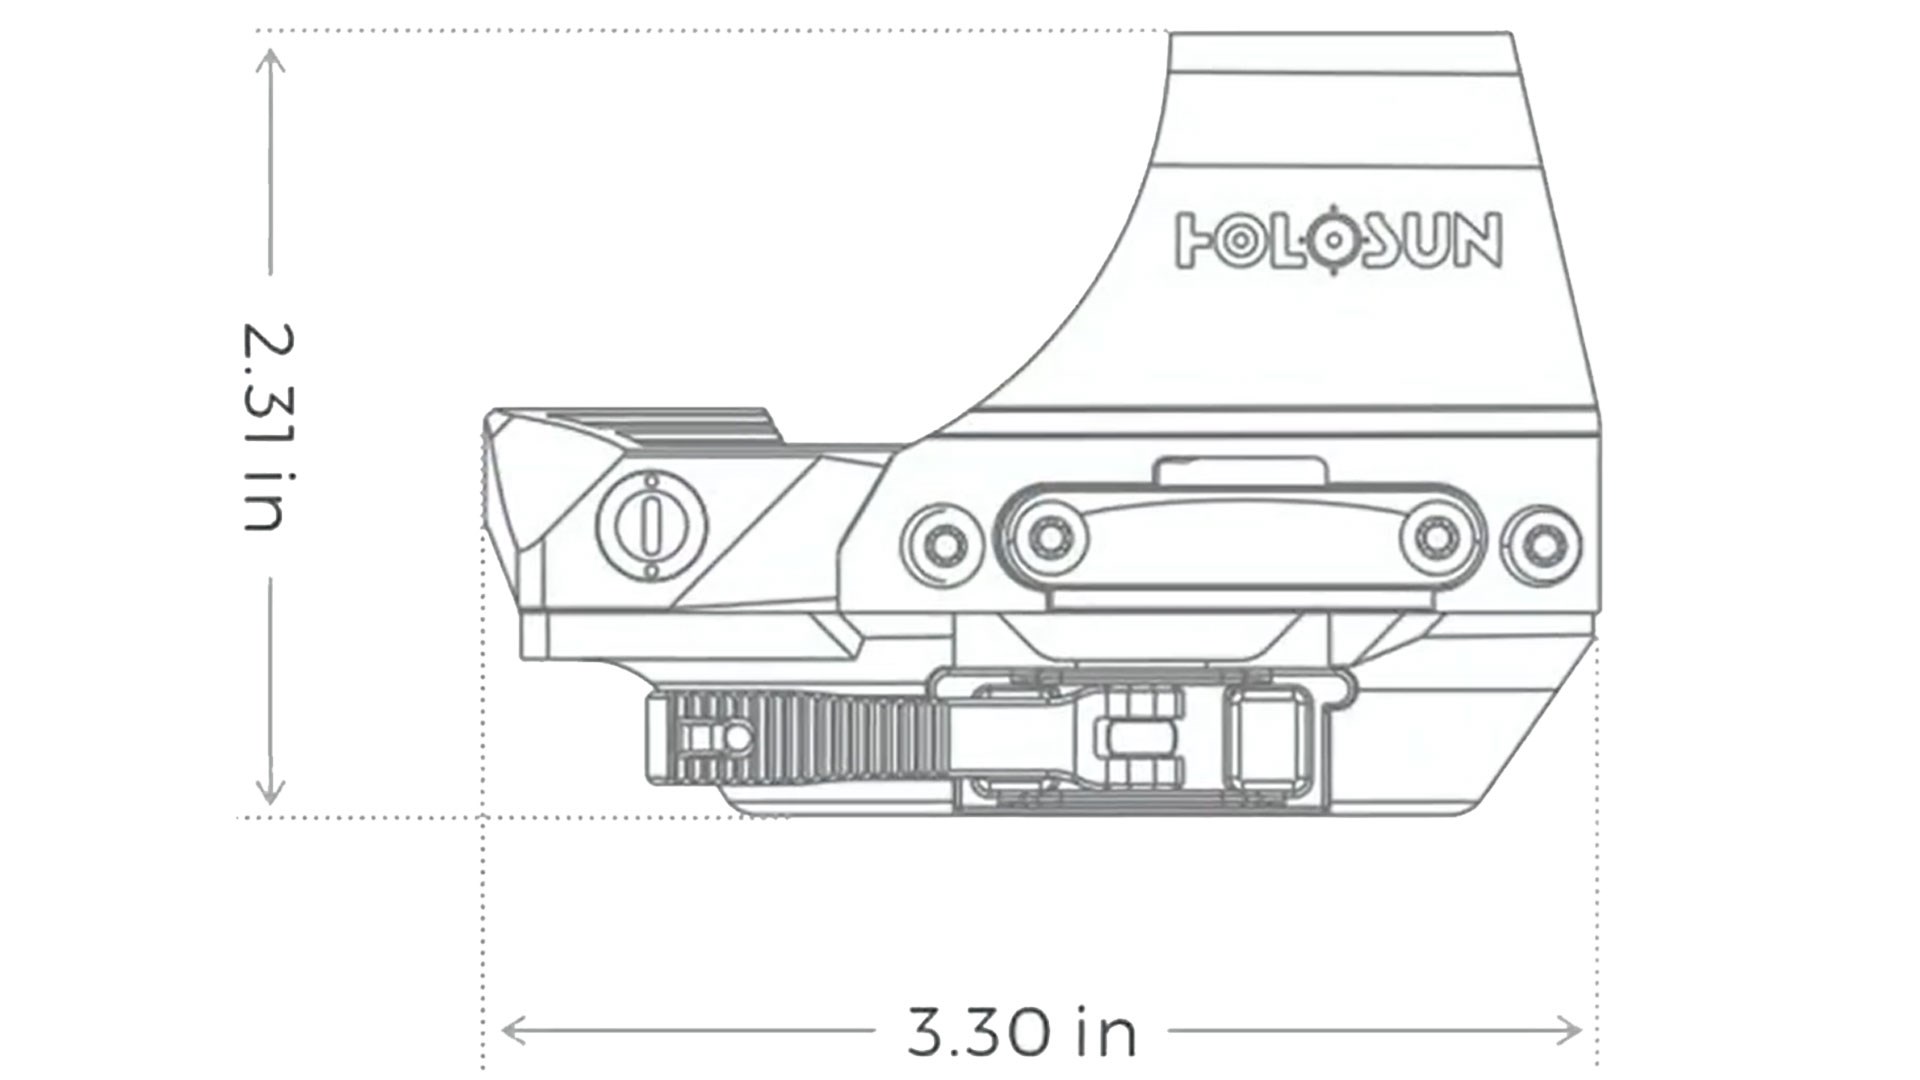 Holosun 510C dimensions